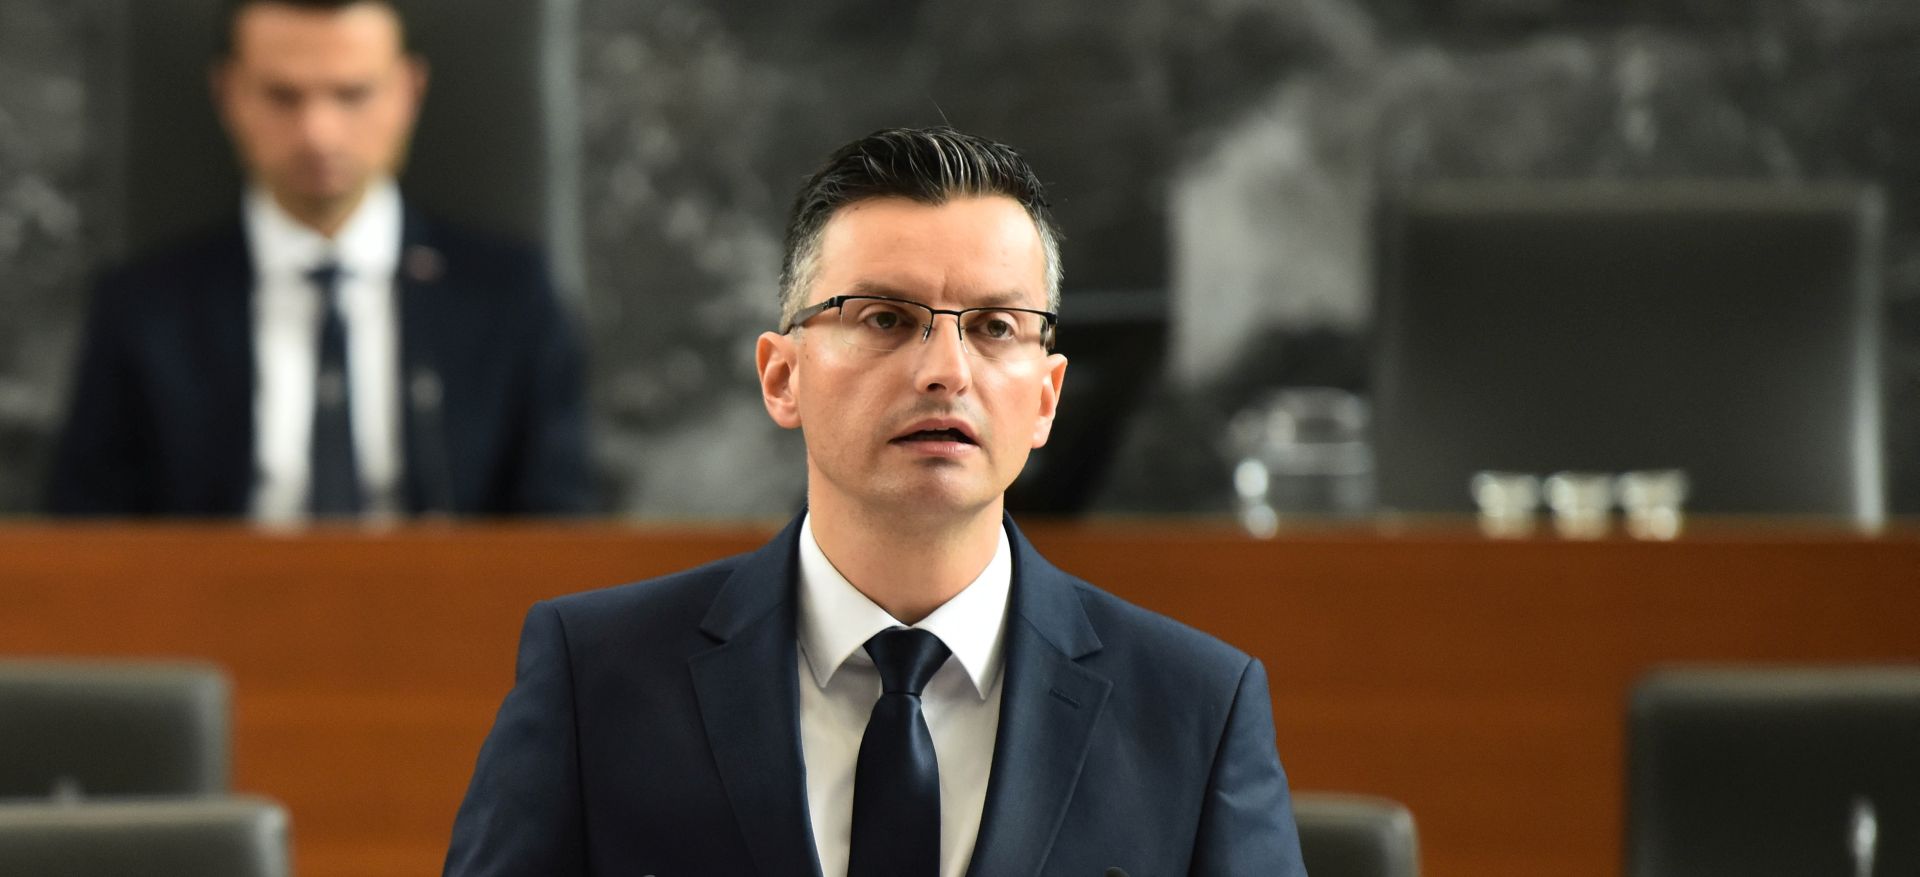 Slovenski premijer ocijenio kako je odluka Europske komisije da je Hrvatska spremna za Schengen “politička”